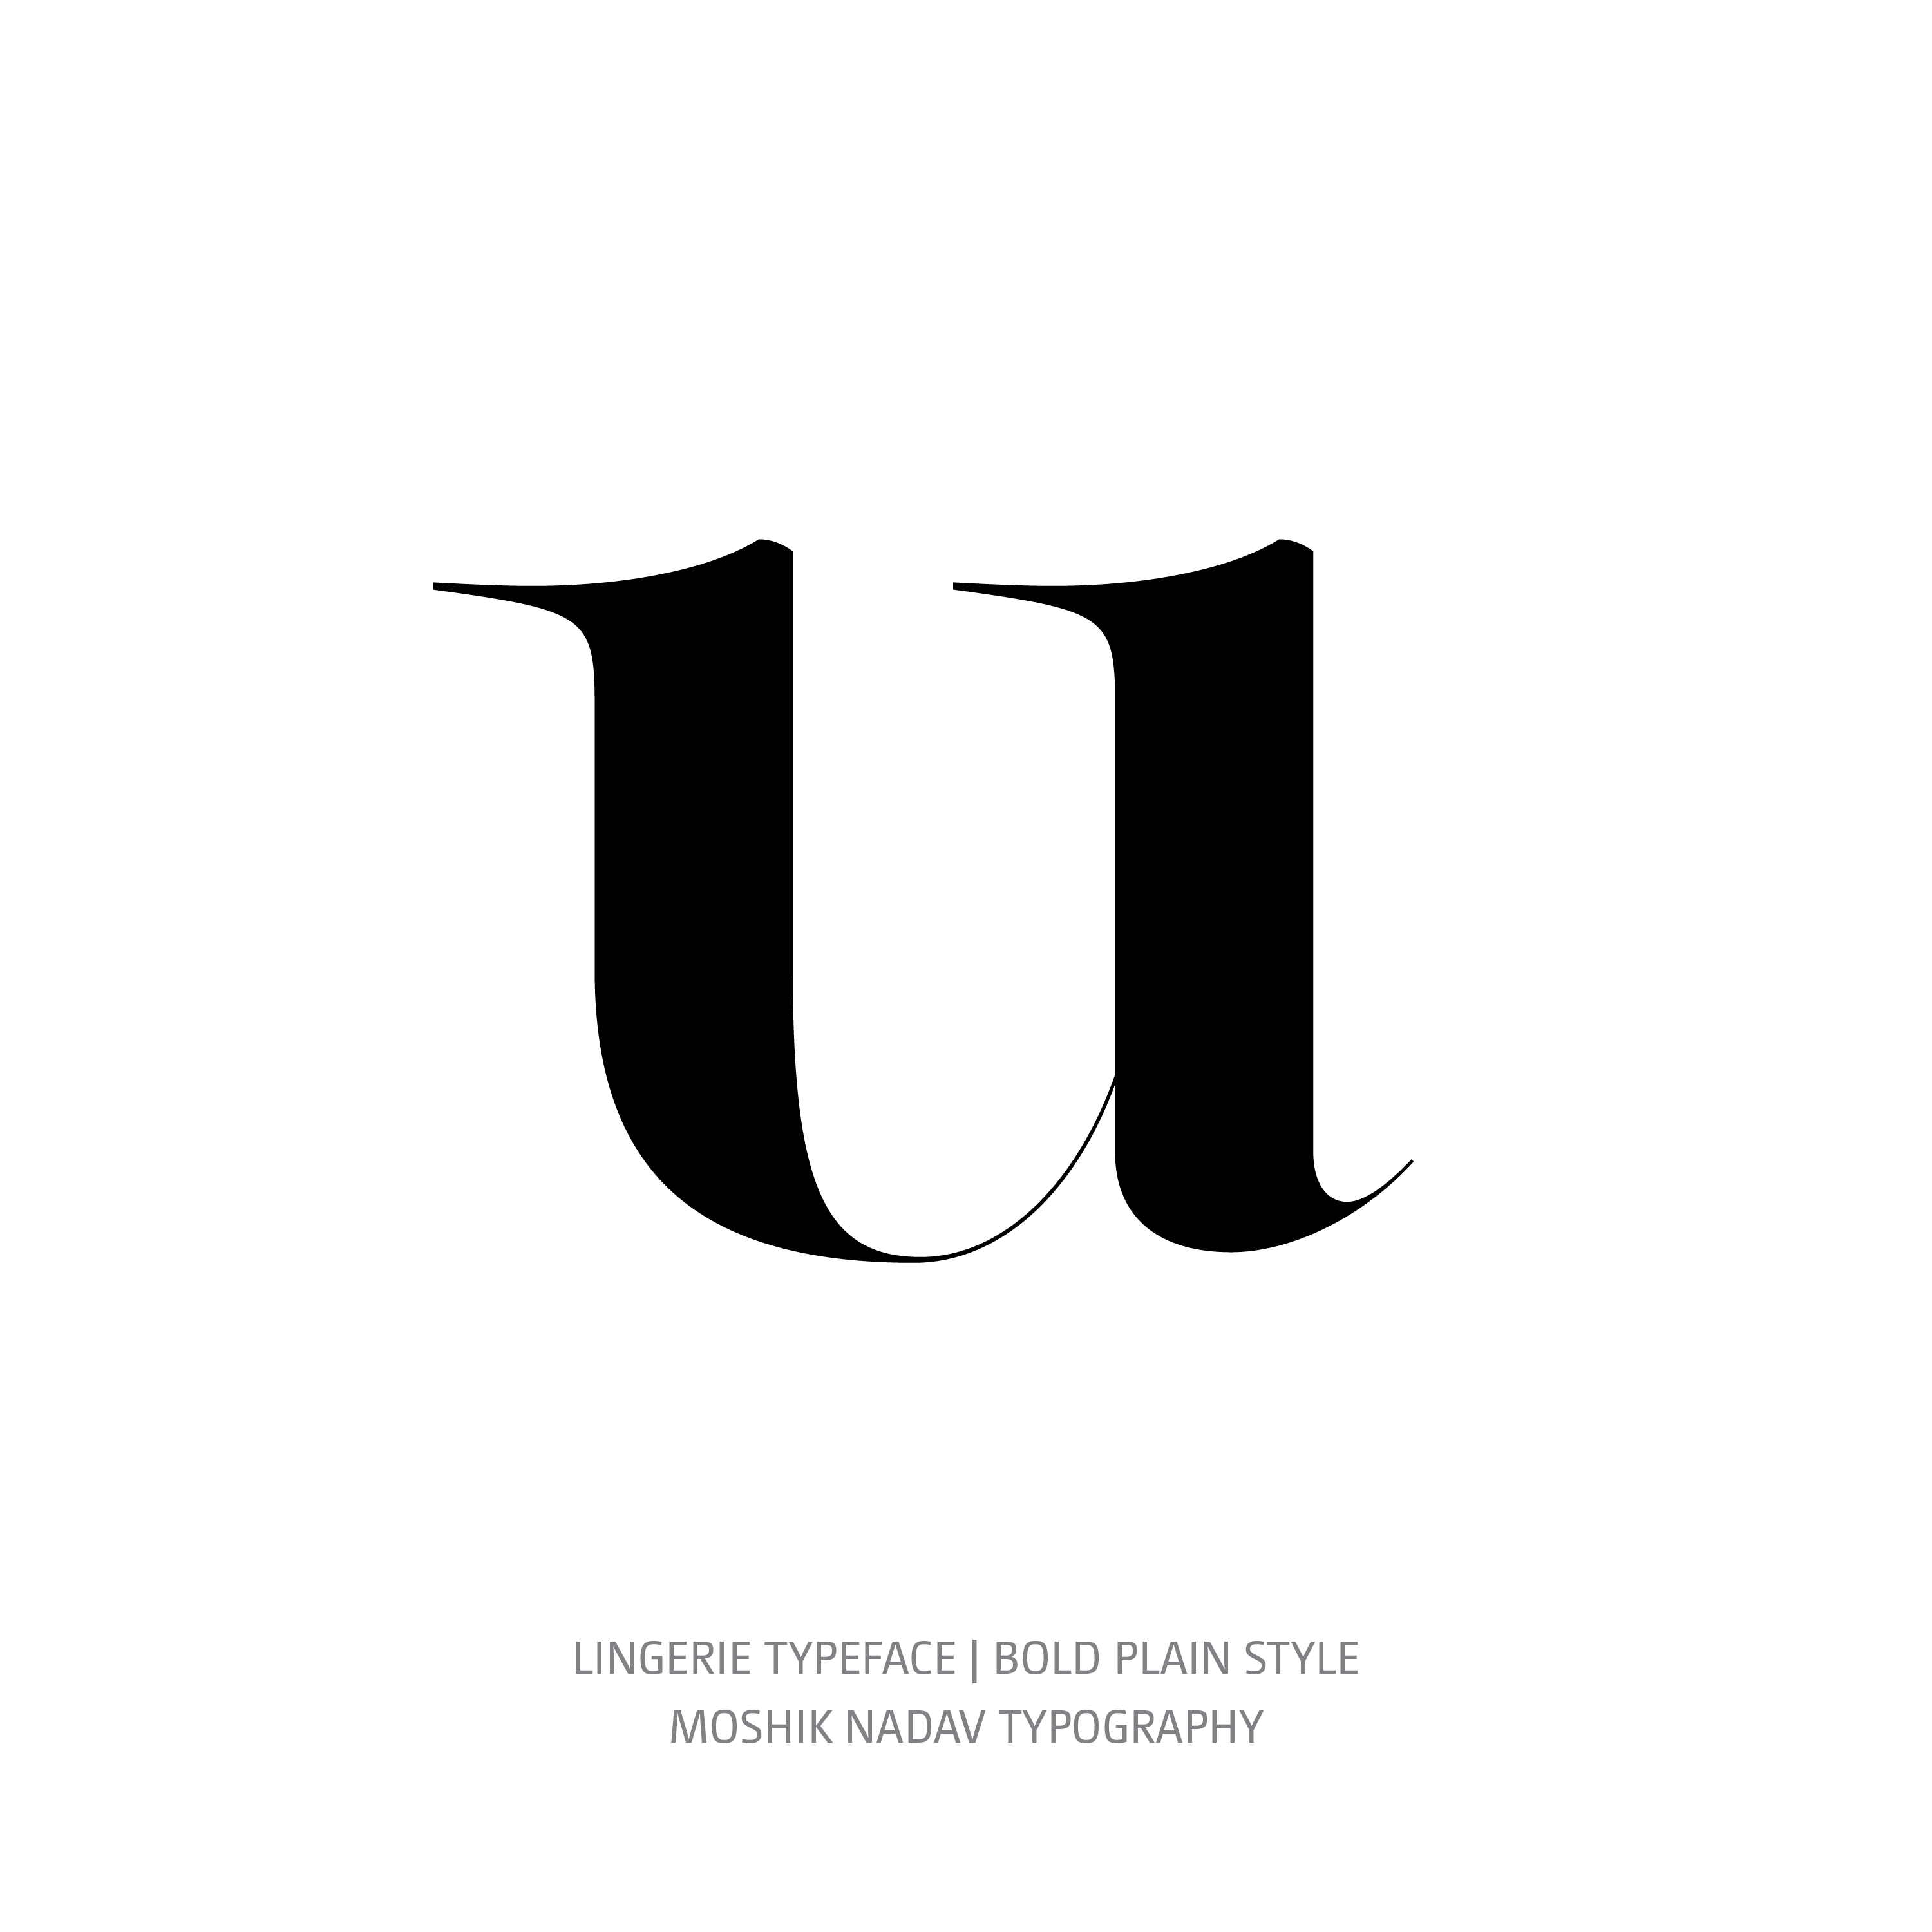 Lingerie Typeface Bold Plain u